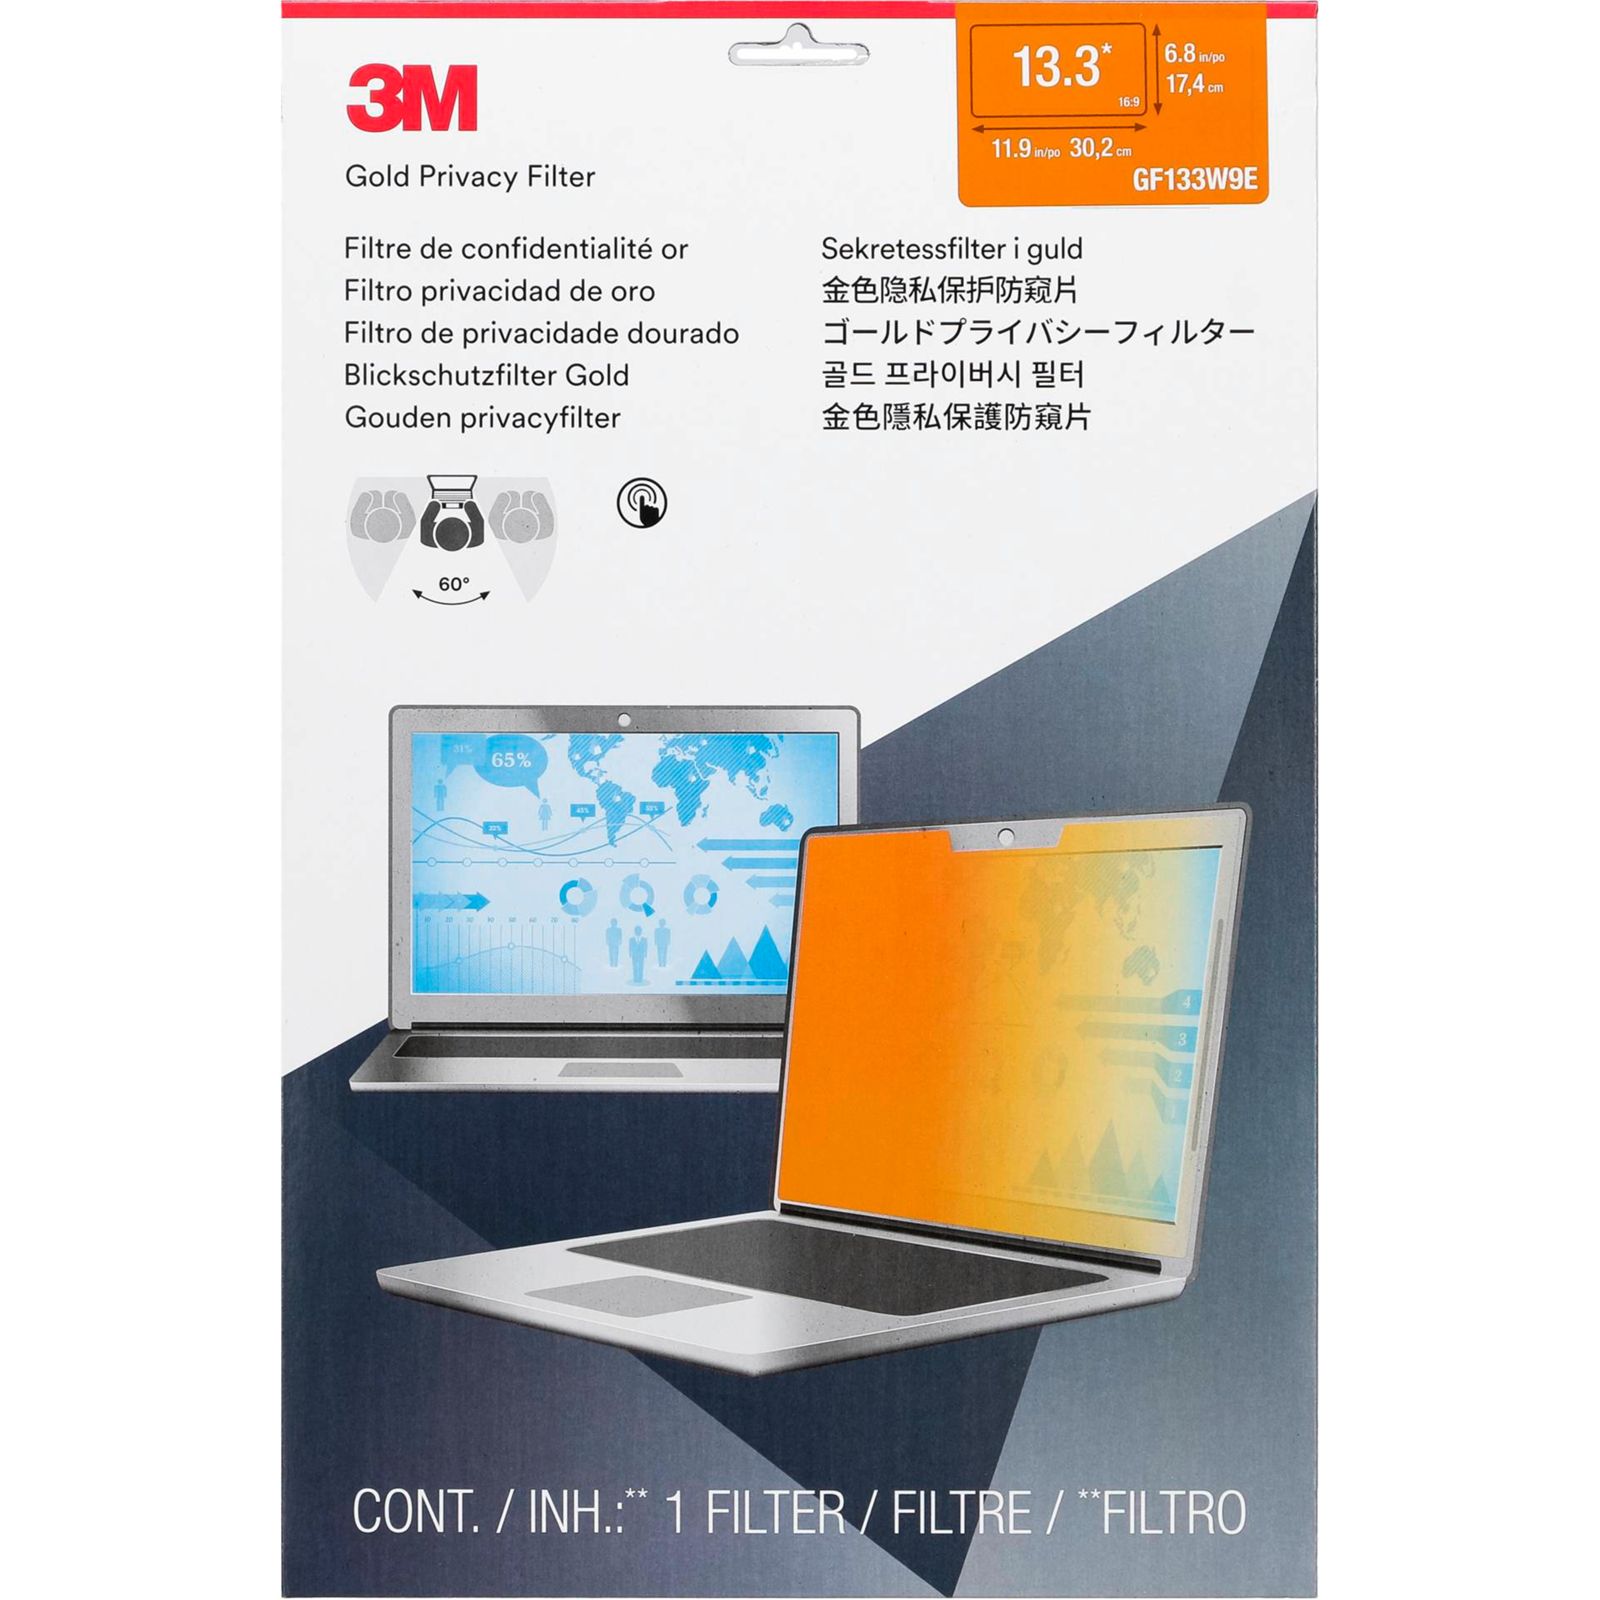 3M GF133W9E filtro privacy oro per Laptop 13,3